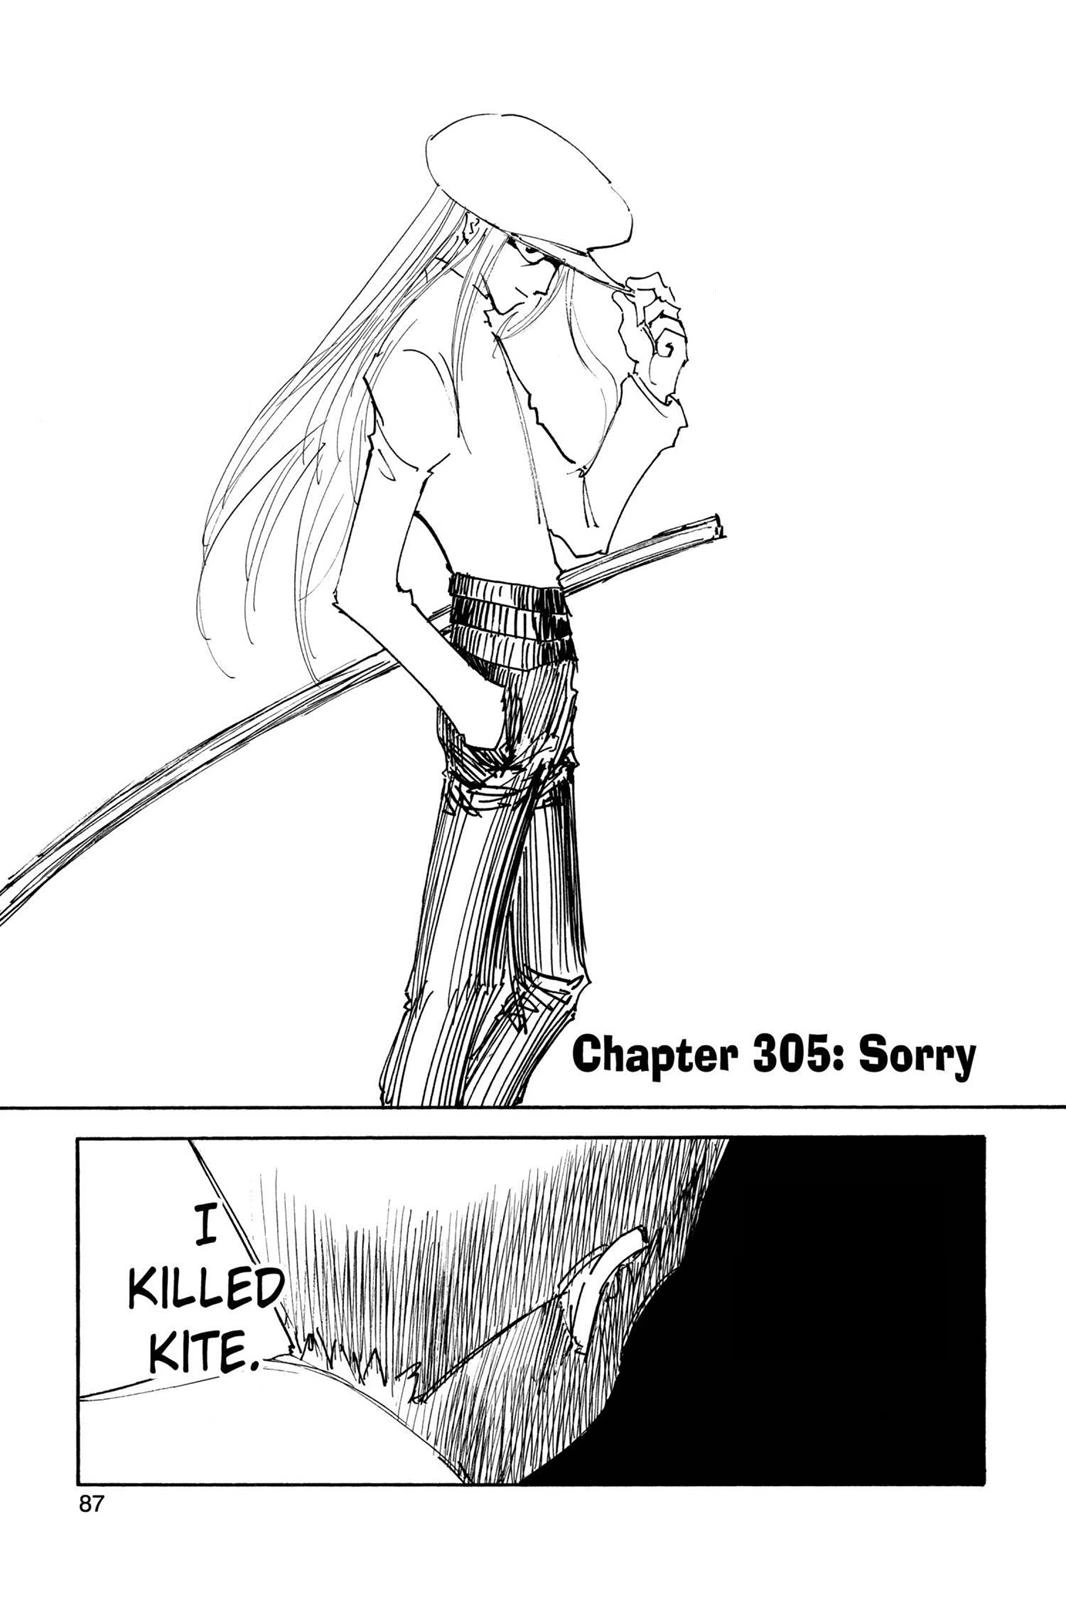 Hunter X Hunter, Chapter 190 - Hunter X Hunter Manga Online